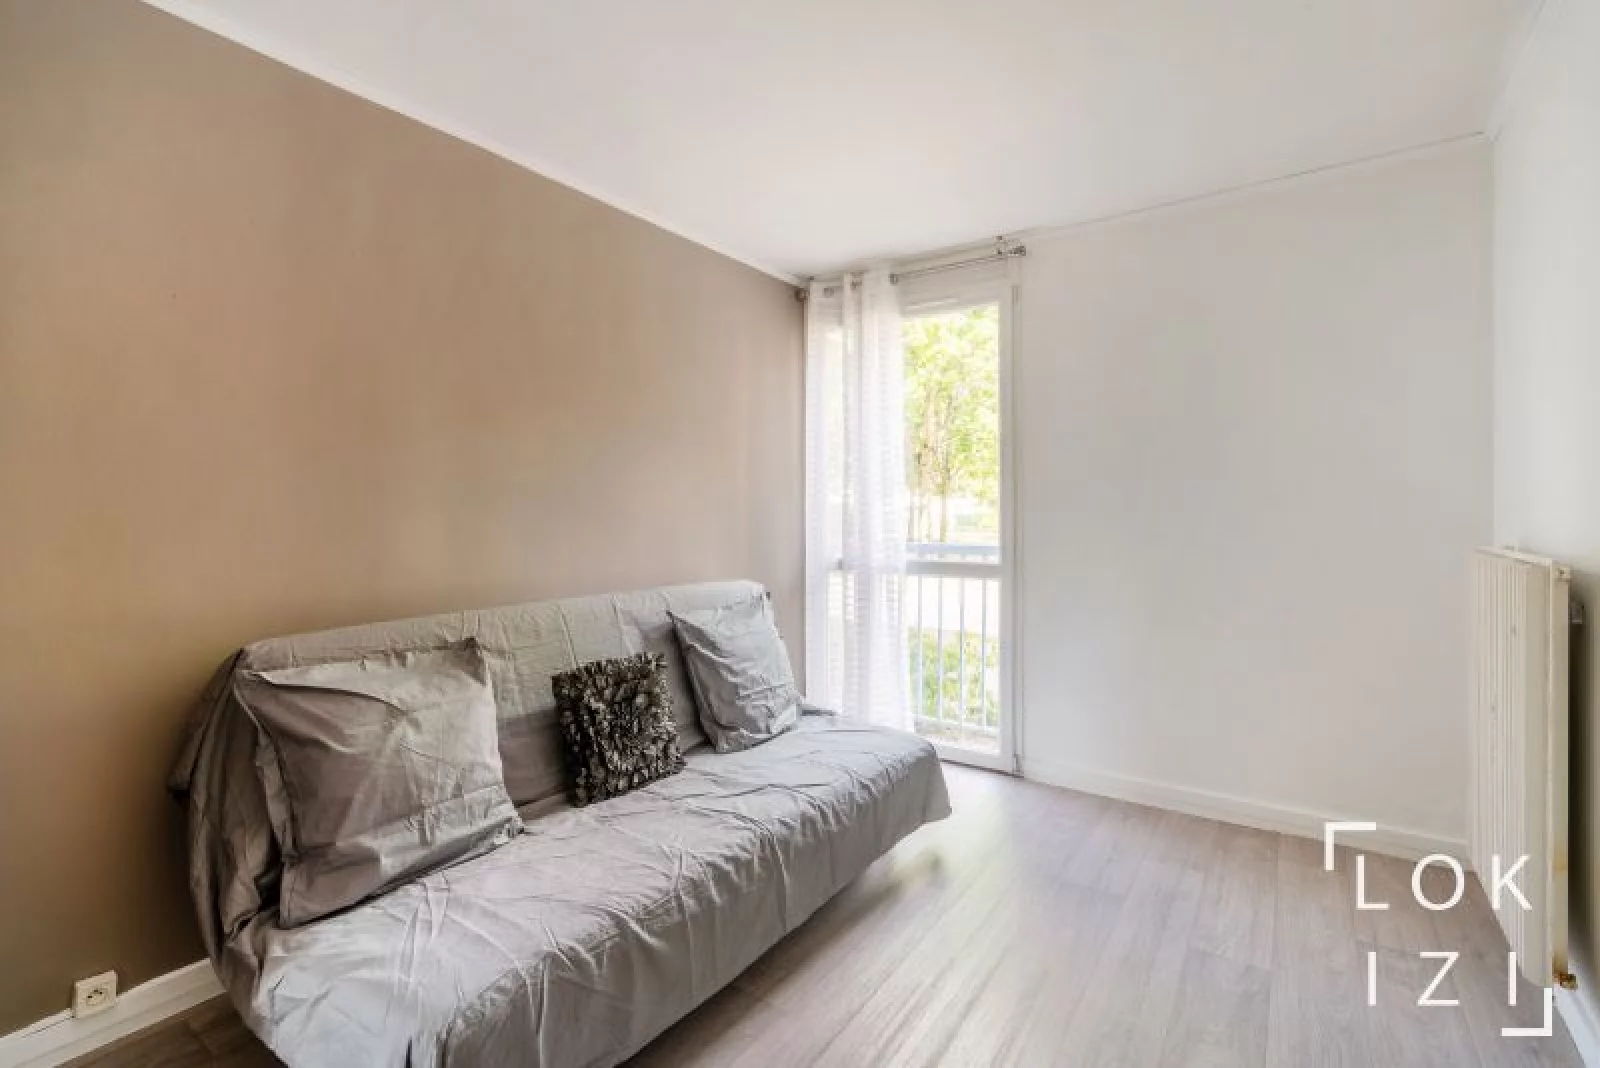 Location appartement meublé 3 pièces 74 m² (Orléans nord/ Saran 45)